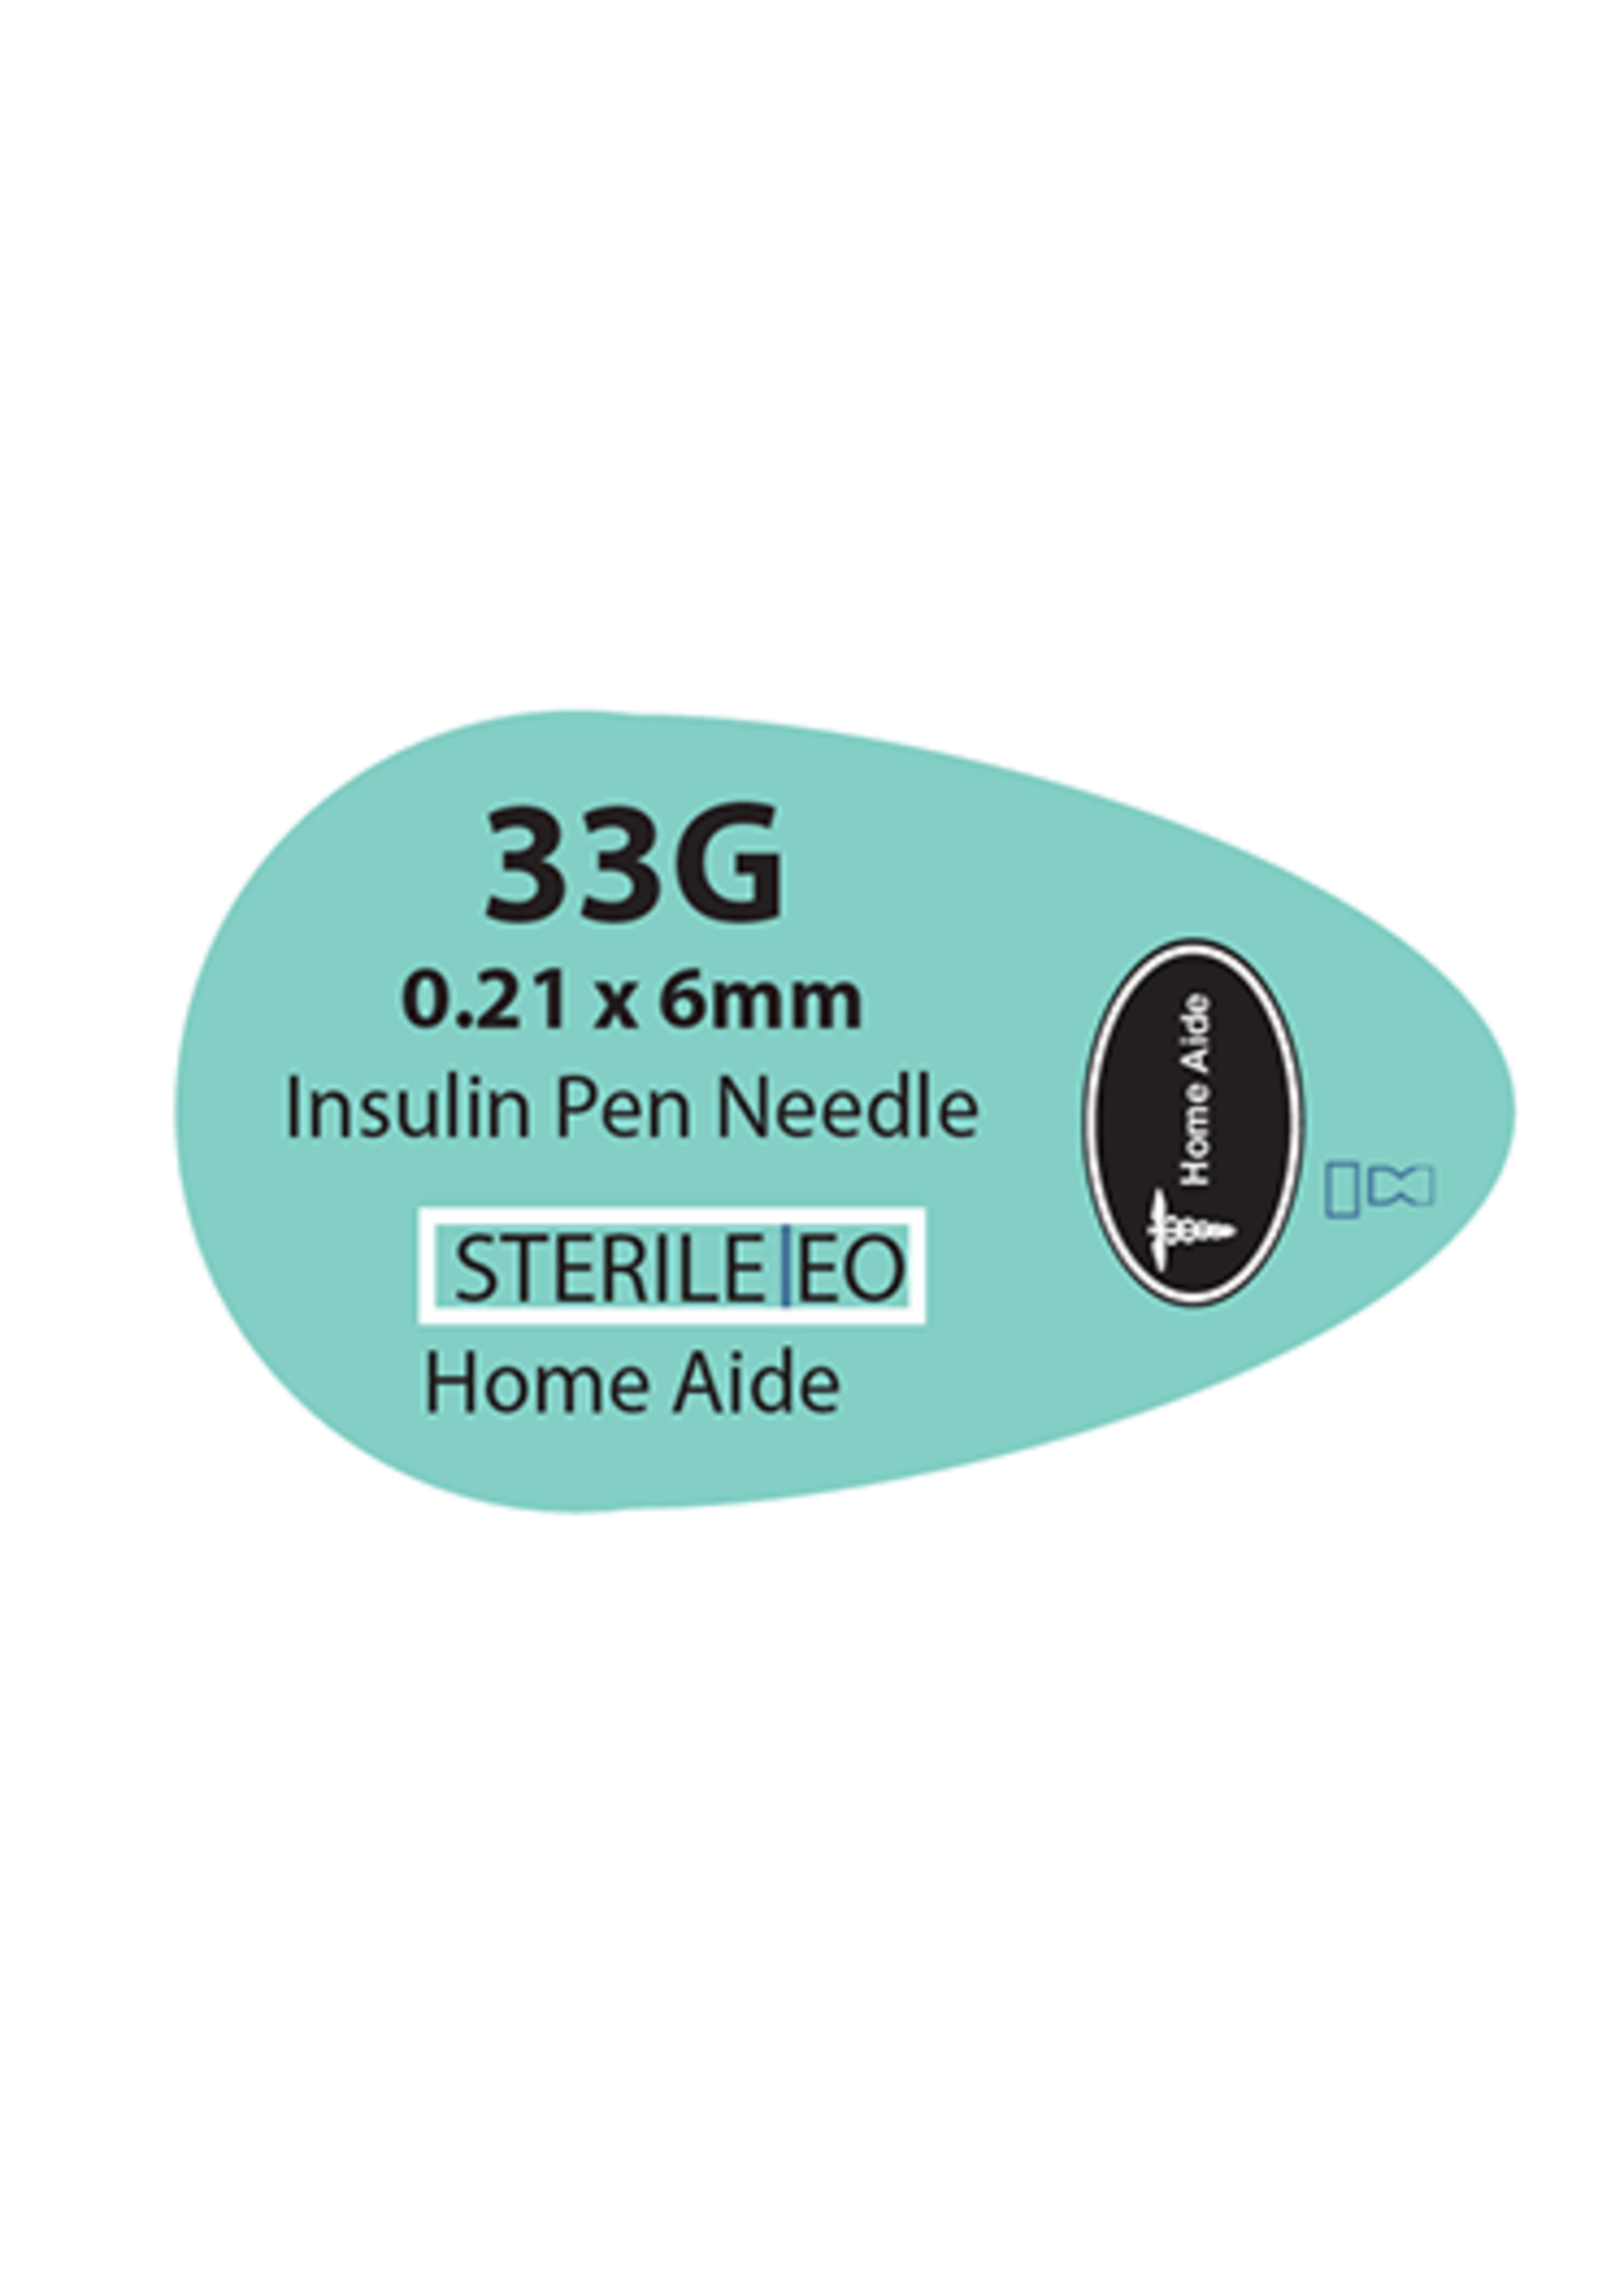 Easy Comfort Pen Needles 33G 6mm - NDC# 950632-0007-46